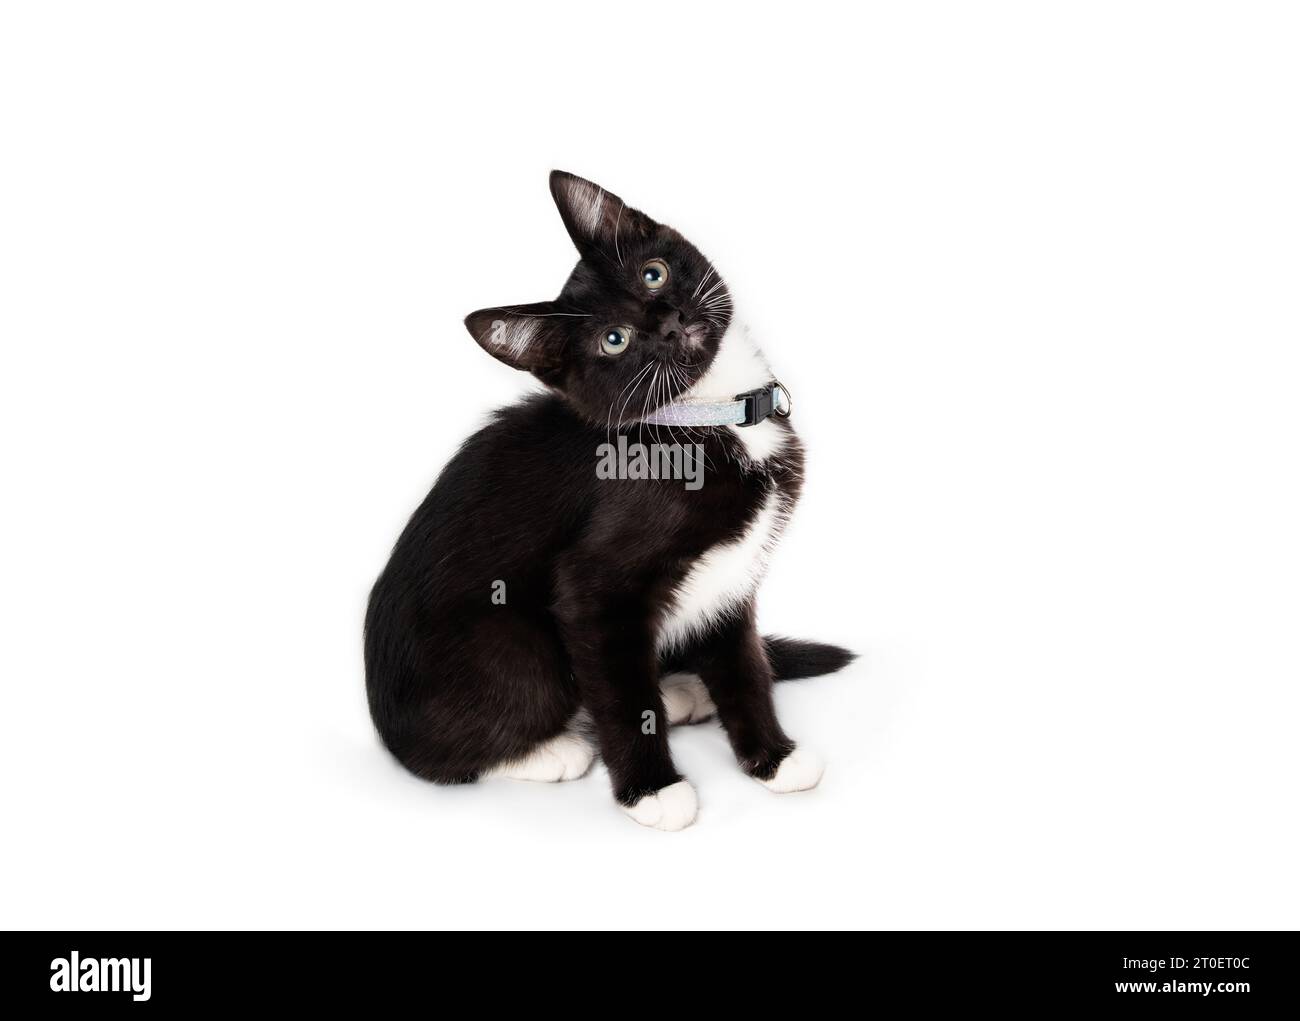 Kuriose Kätzchen sitzt mit geneigtem Kopf, während sie nach oben blickt. Seitenansicht eines süßen schwarz-weißen Kätzchens mit interessierter Körpersprache. 8 Wochen alte Smoking-Katze Stockfoto